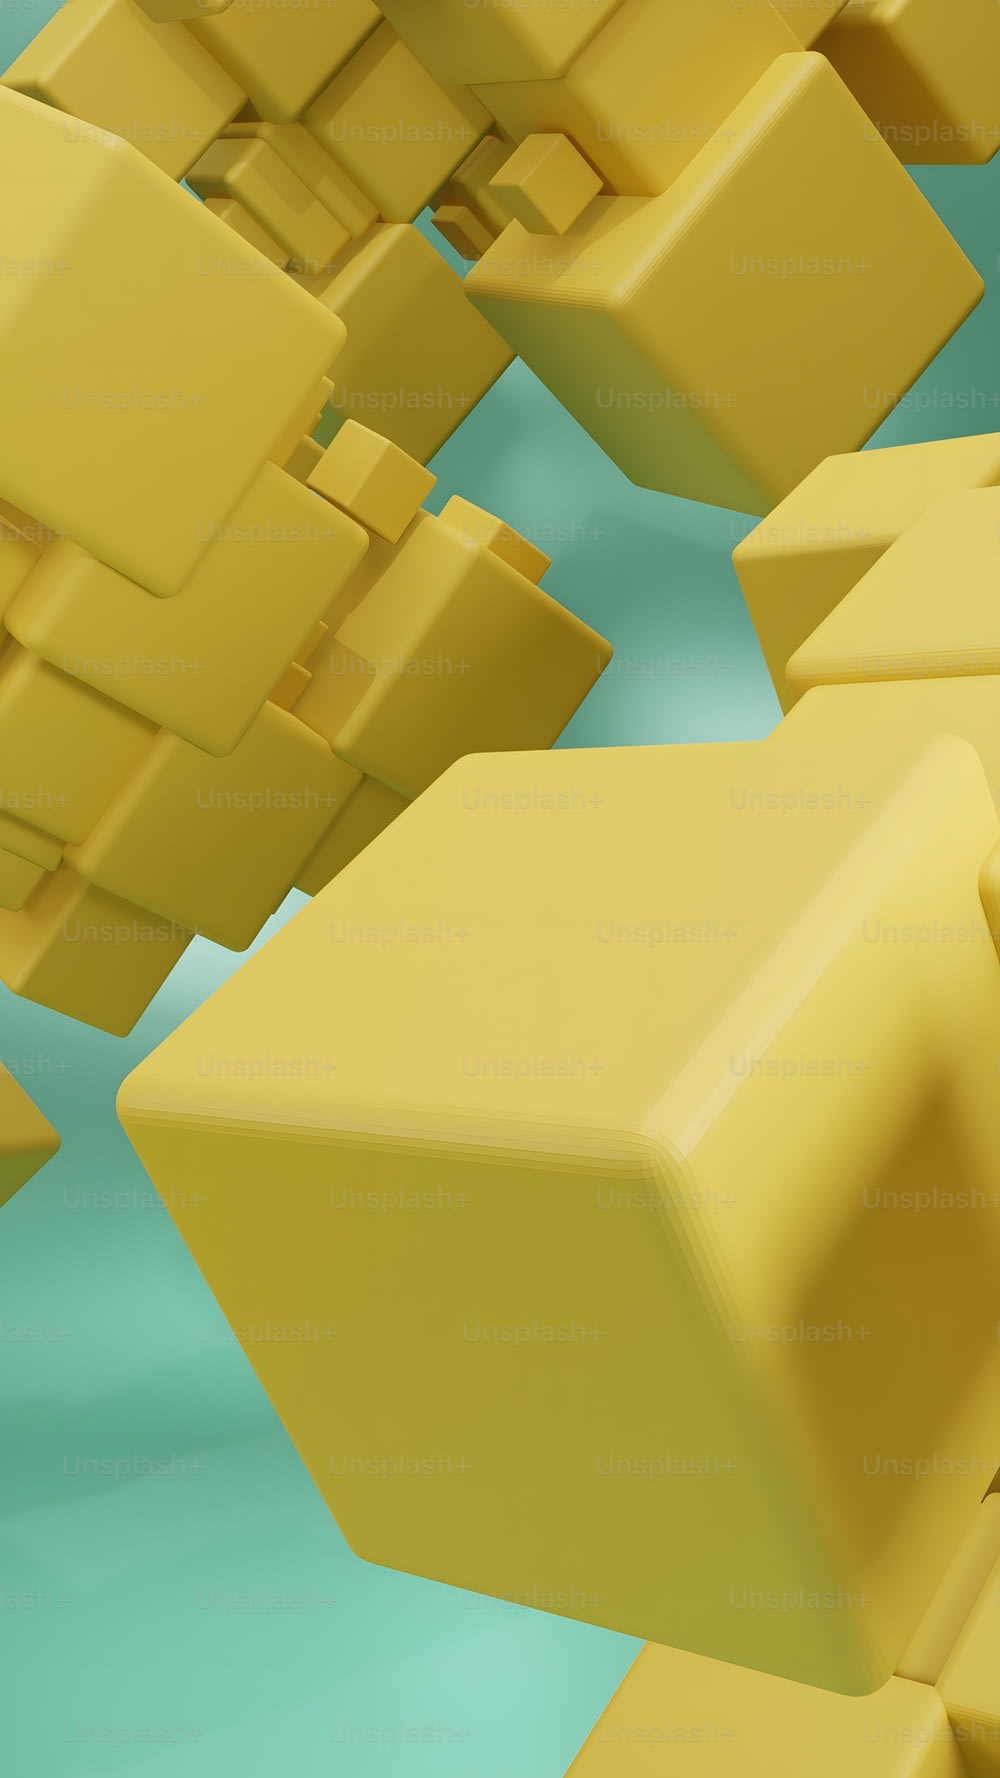 Un bouquet de cubes jaunes flottant dans les airs